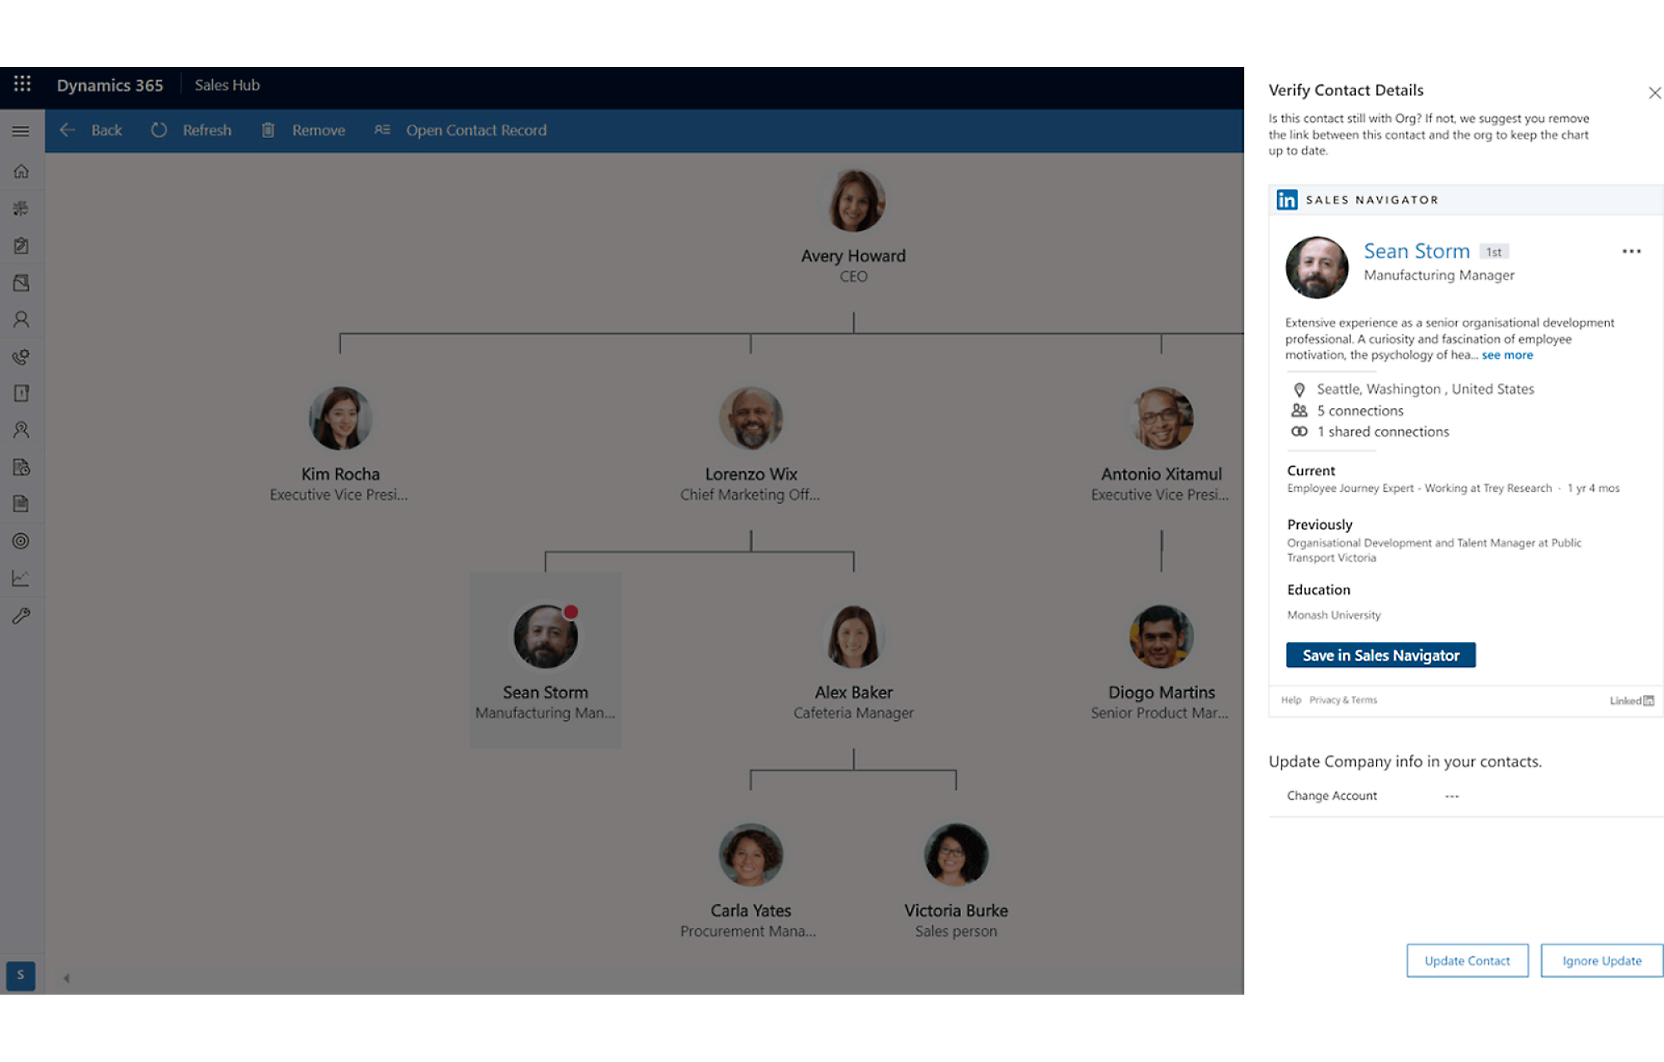 Uma captura de ecrã de uma interface do Dynamics 365 a mostrar um organograma e um perfil detalhado de um colaborador com o nome Sean Storm